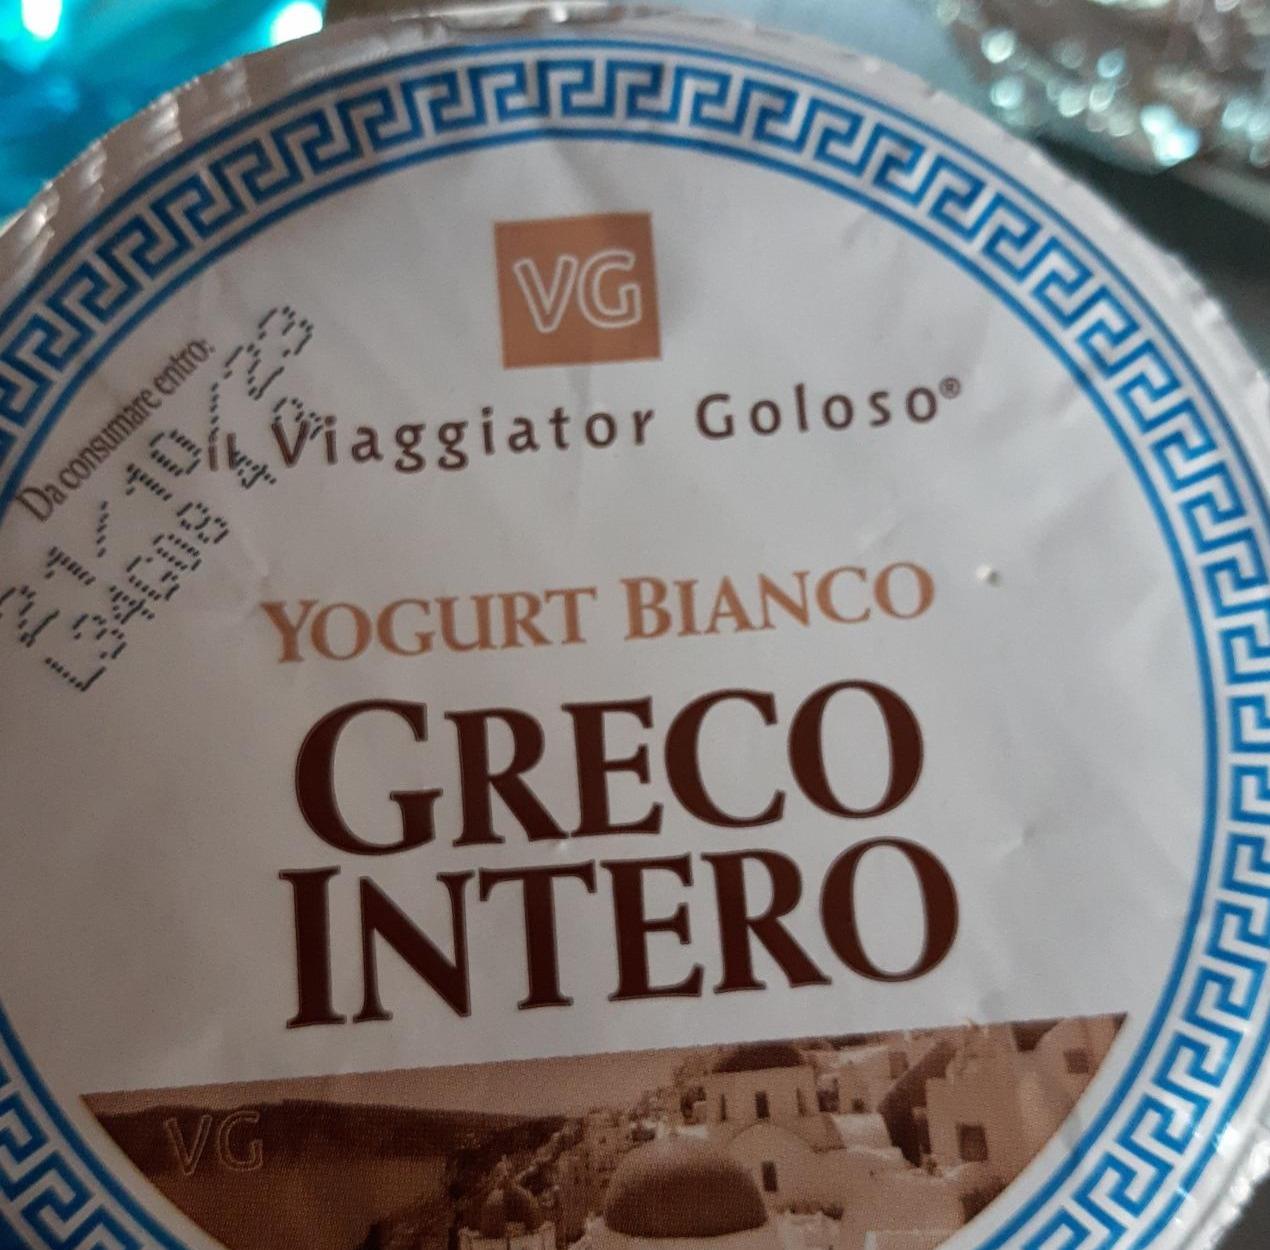 Фото - Yogurt bianco greco intero Il viaggiatore Goloso